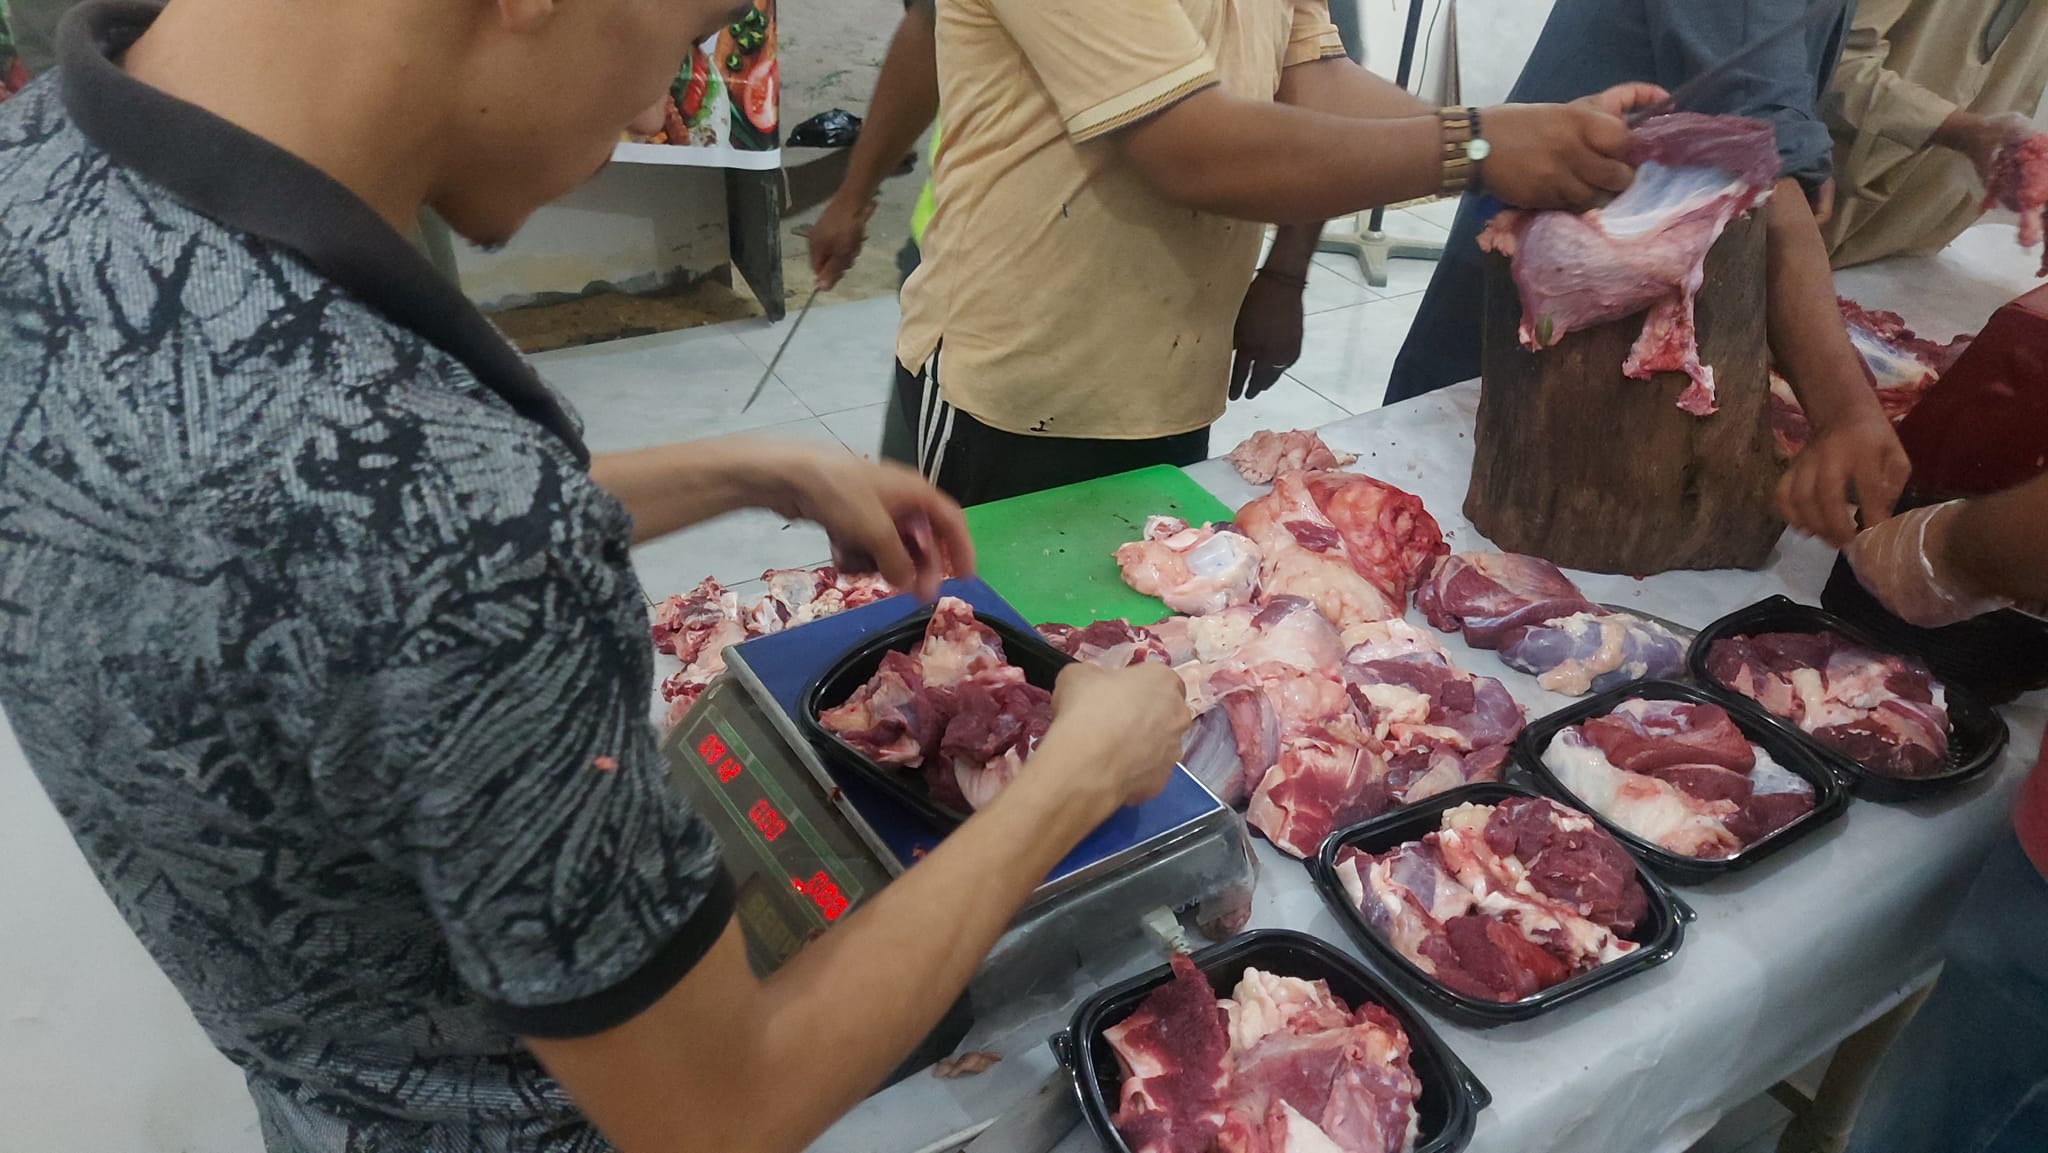 وزن اللحوم لوضعها بأطباق قبل التوزيع